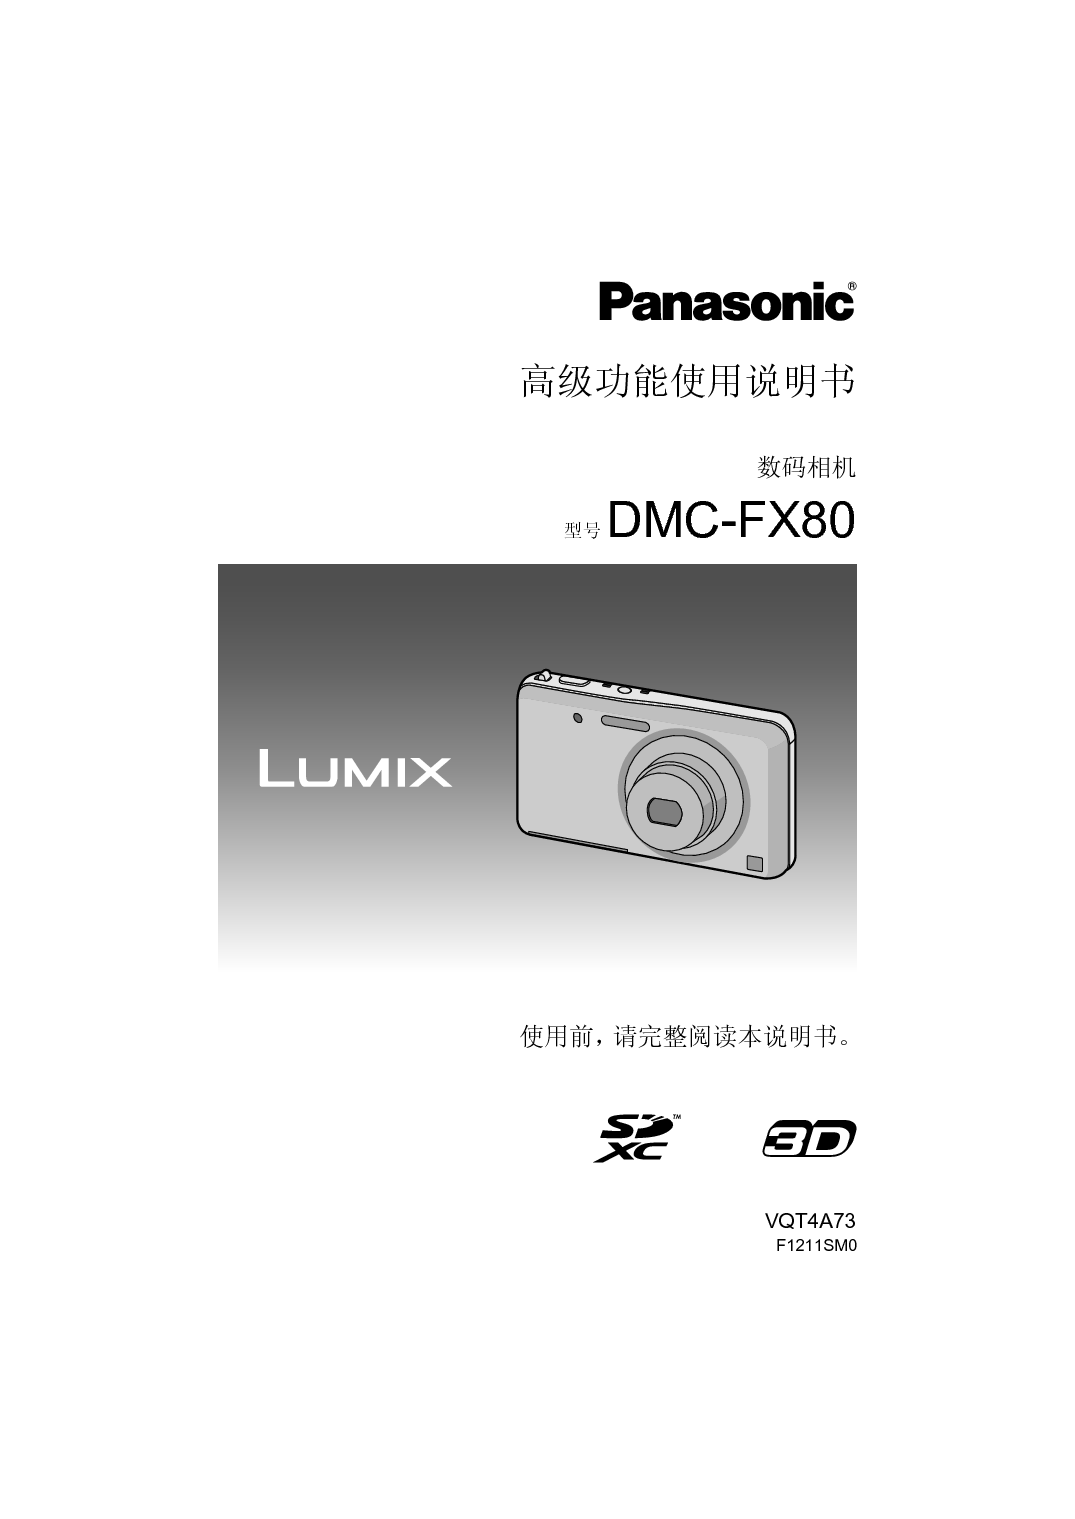 松下 Panasonic DMC-FX80GK 高级说明书 封面